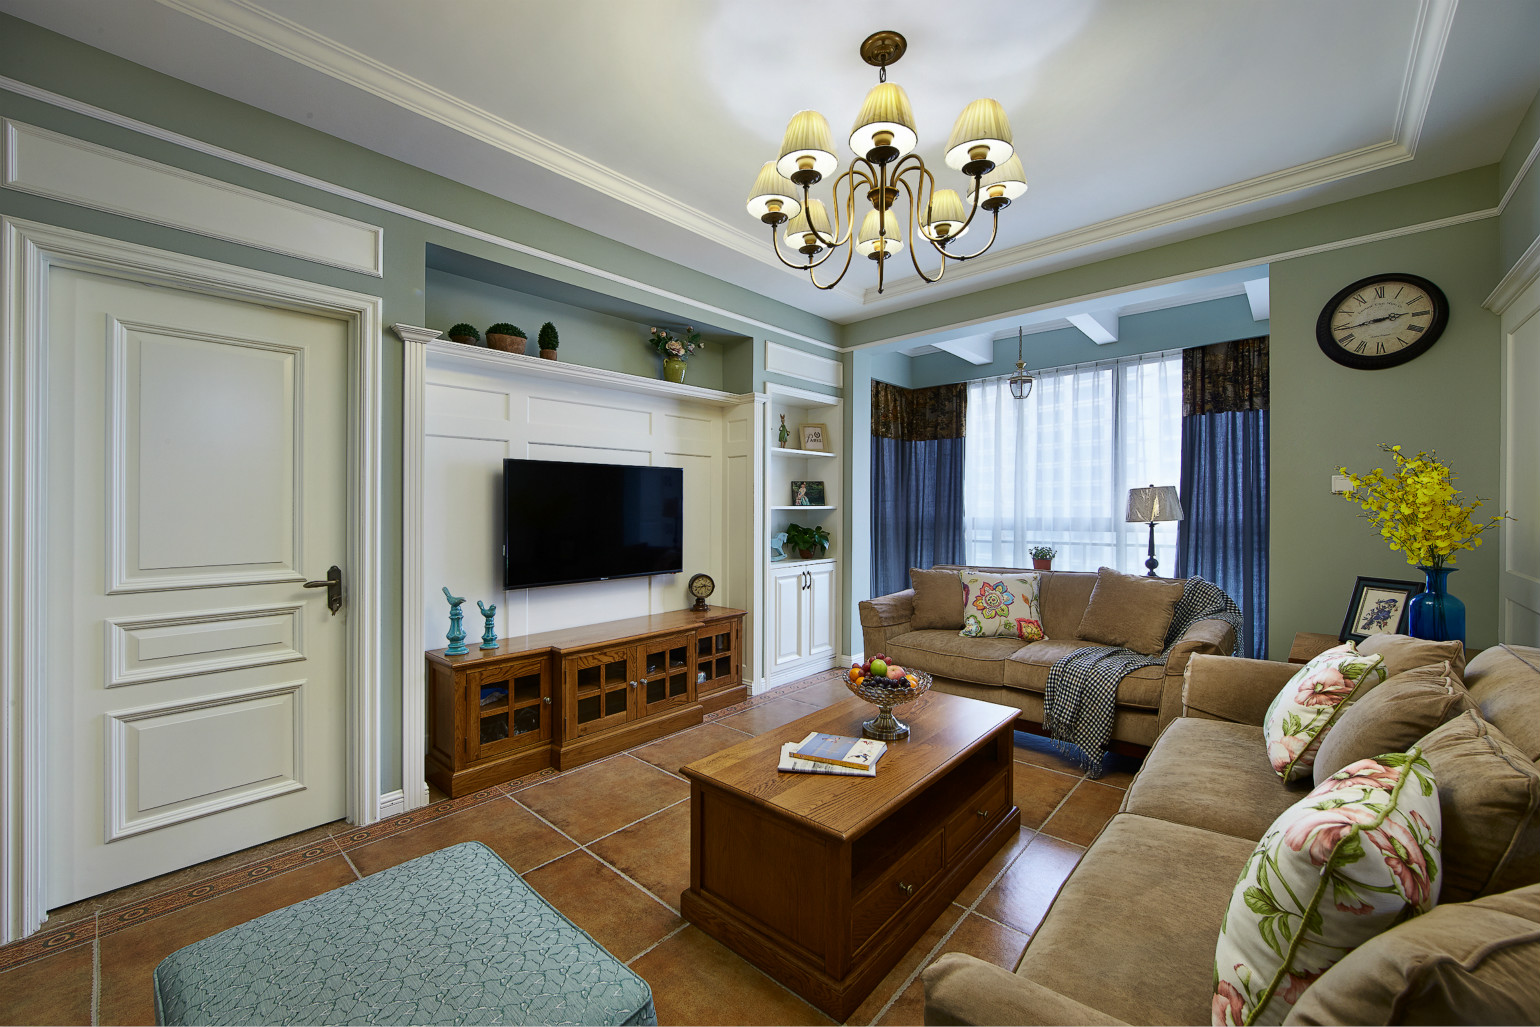 客厅沙发组合有着丝绒般的质感。顶部华丽枝形吊灯，在柔和灯光的映衬下，为客厅营造出一种优雅，温馨的家居